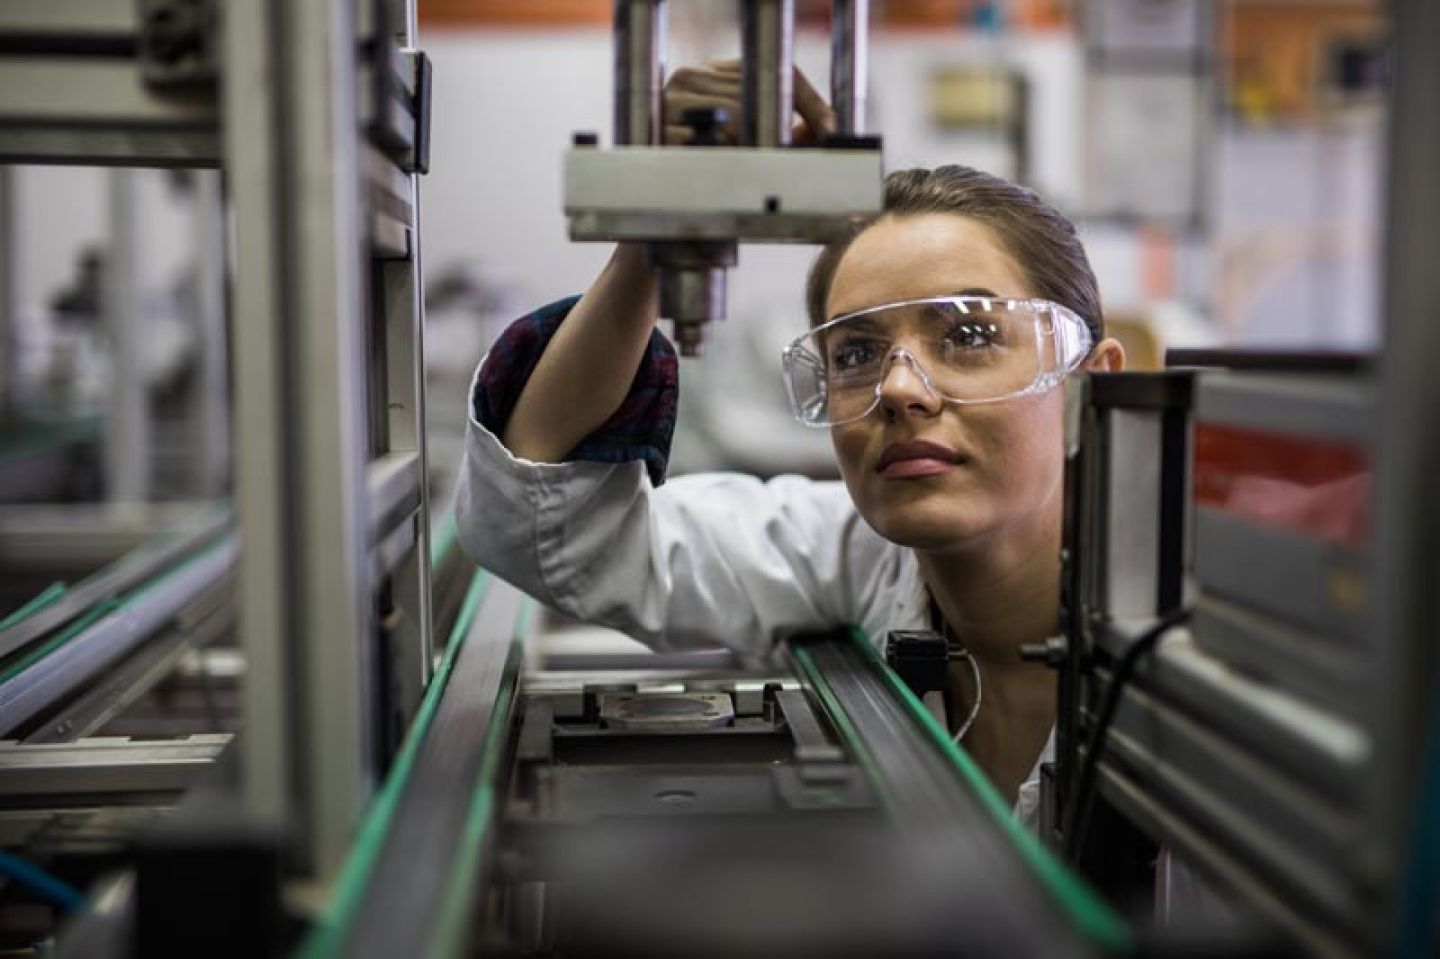 Vrouw bij productiemachine draagt veiligheidsbril